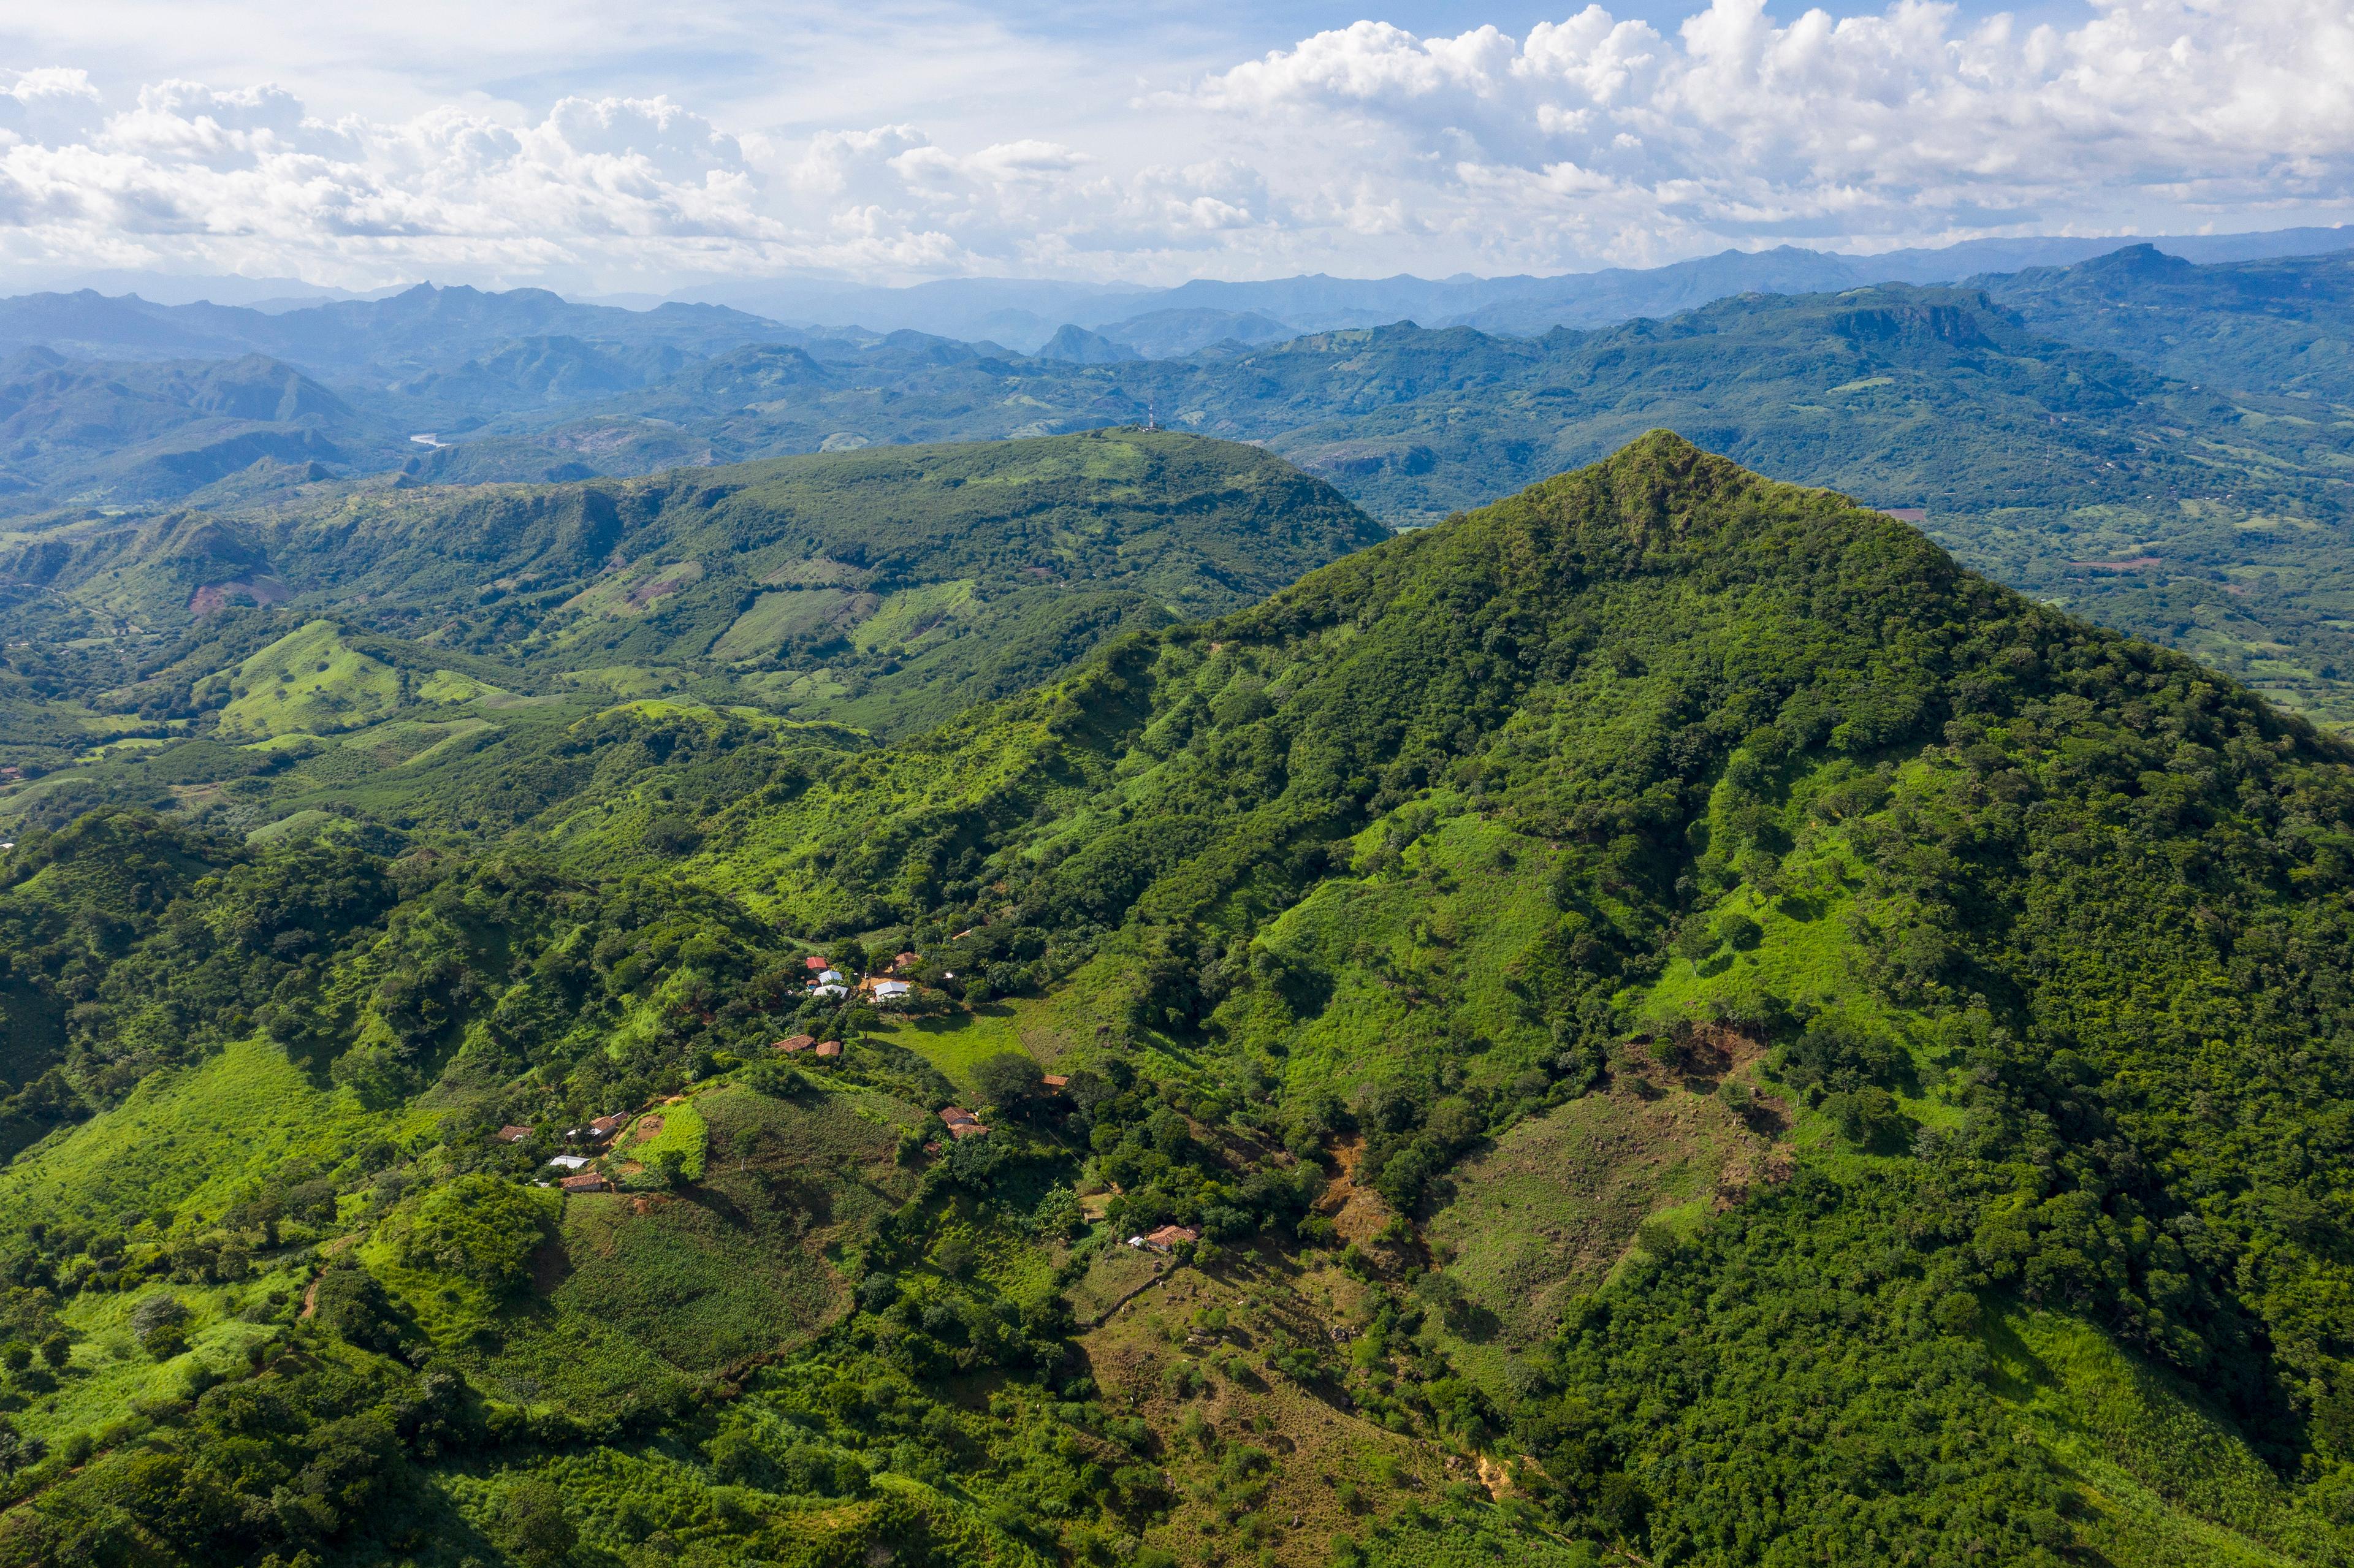 Verdi colline ricoperte di vegetazione si estendono fino all'orizzonte. Nelle valli si trovano alcune case.